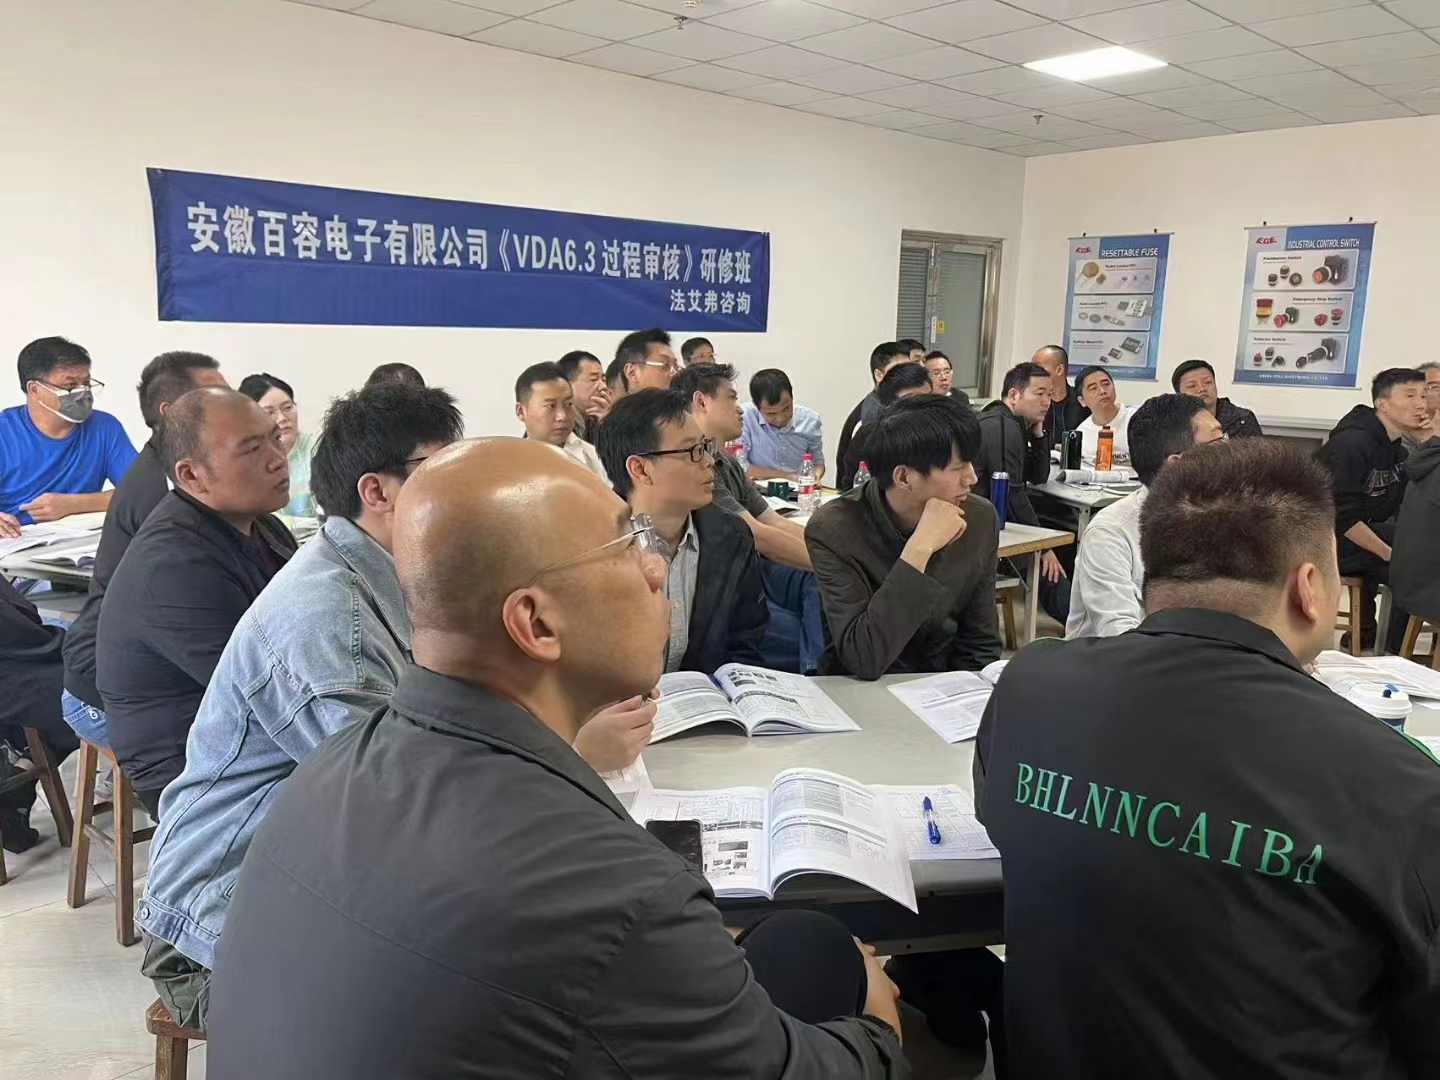 安徽百容电子有限公司《VDA6.3:2023过程审核》培训